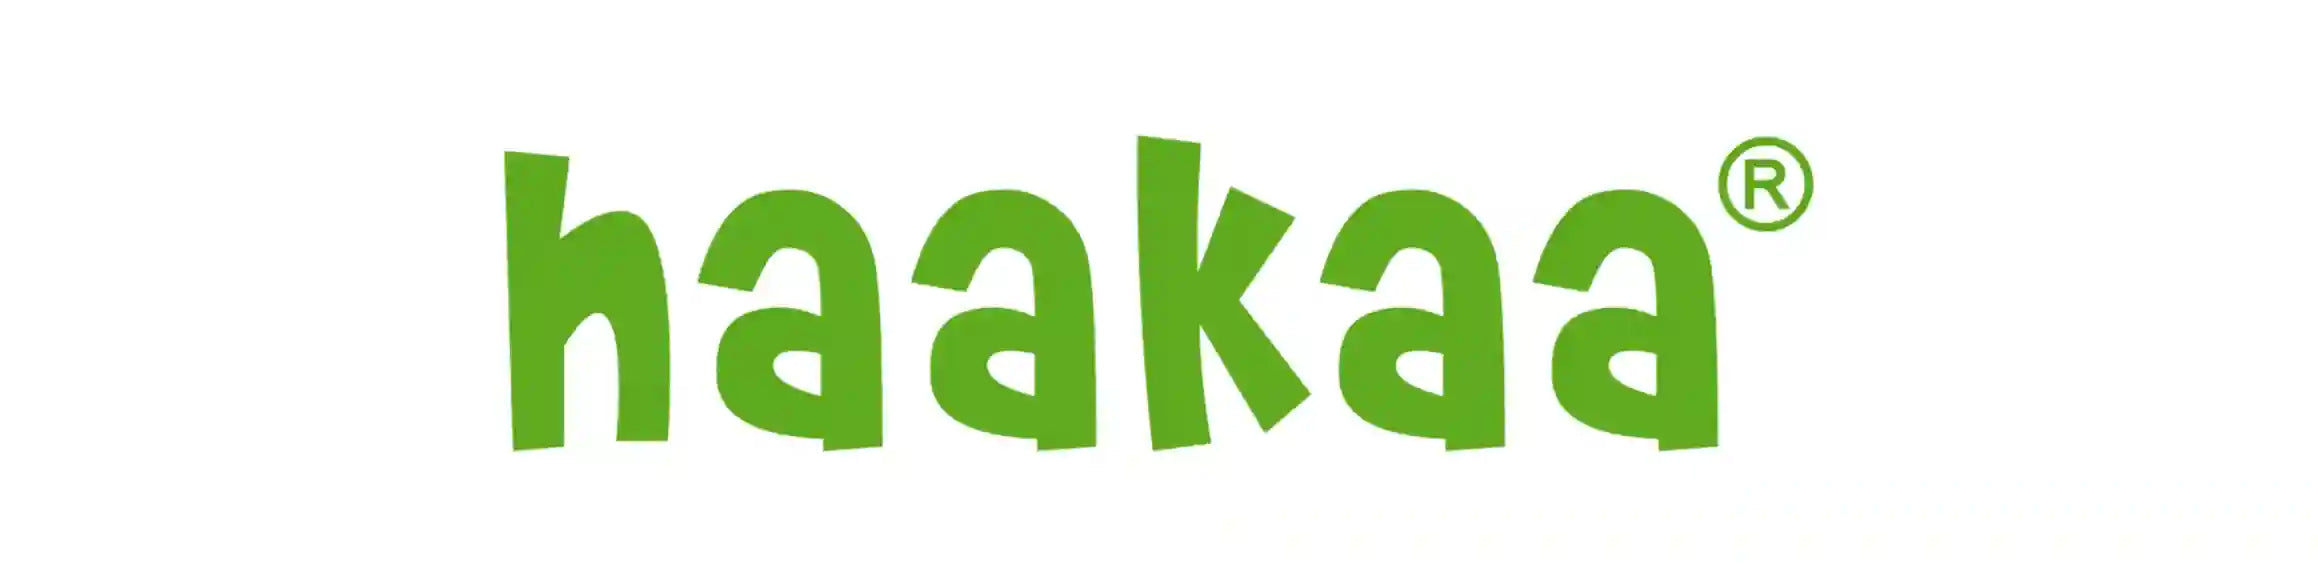 Haakaa Products 